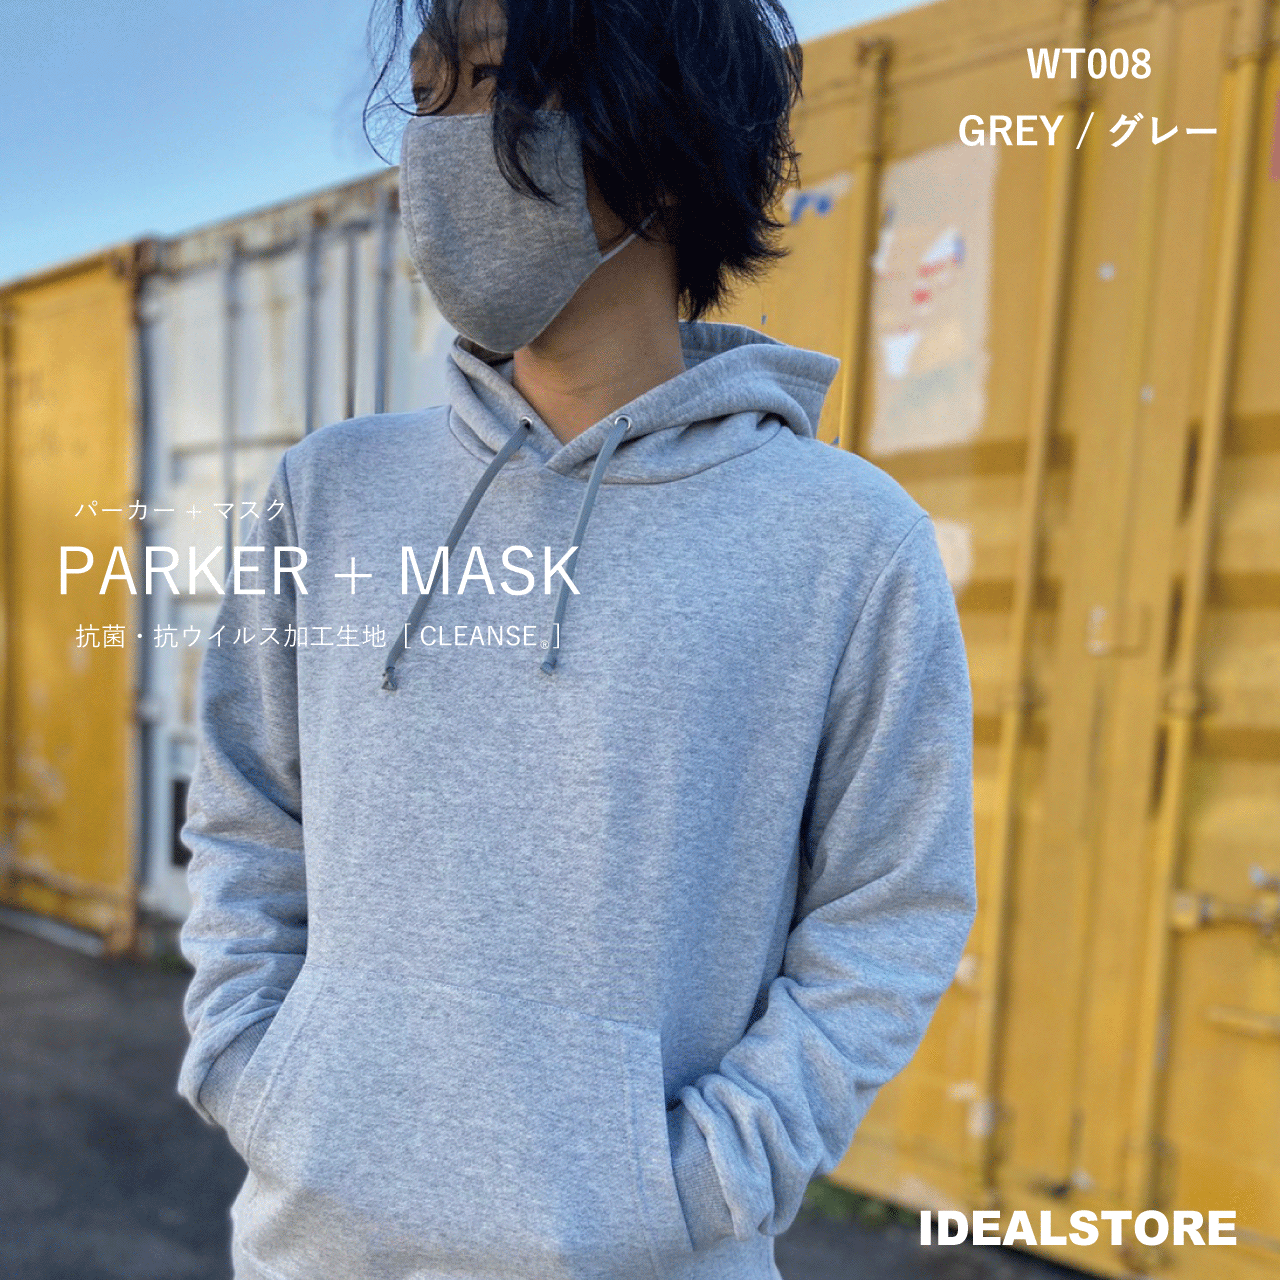 人気のクレンゼ生地を使用し縫製工場同士がタッグを組み、パーカートレーナー+マスクをリリース。